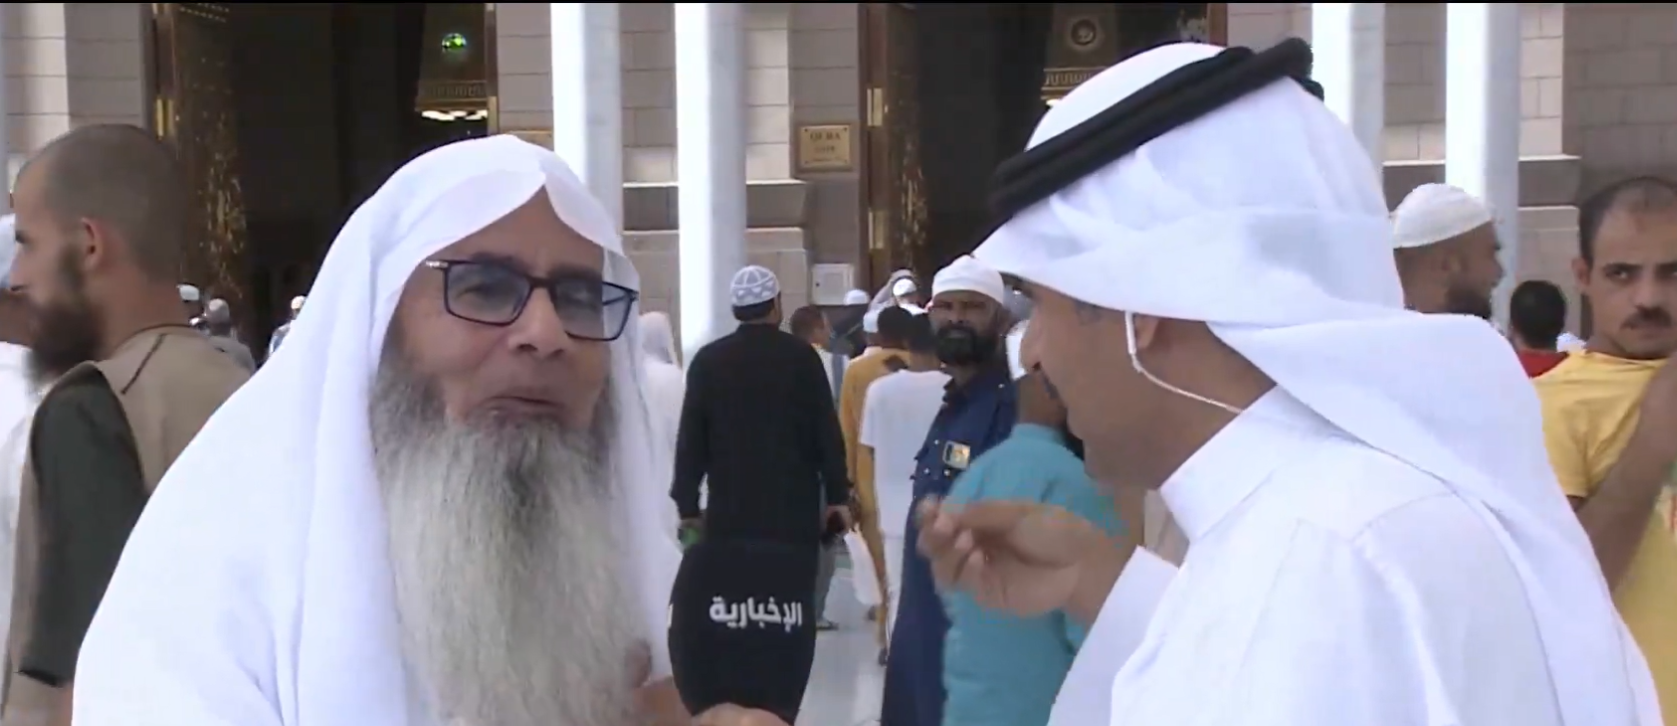 القس المصري مؤمن إبراهيم دخل الإسلام يفاجئ مذيع التلفزيون السعودي بالمسجد النبوي